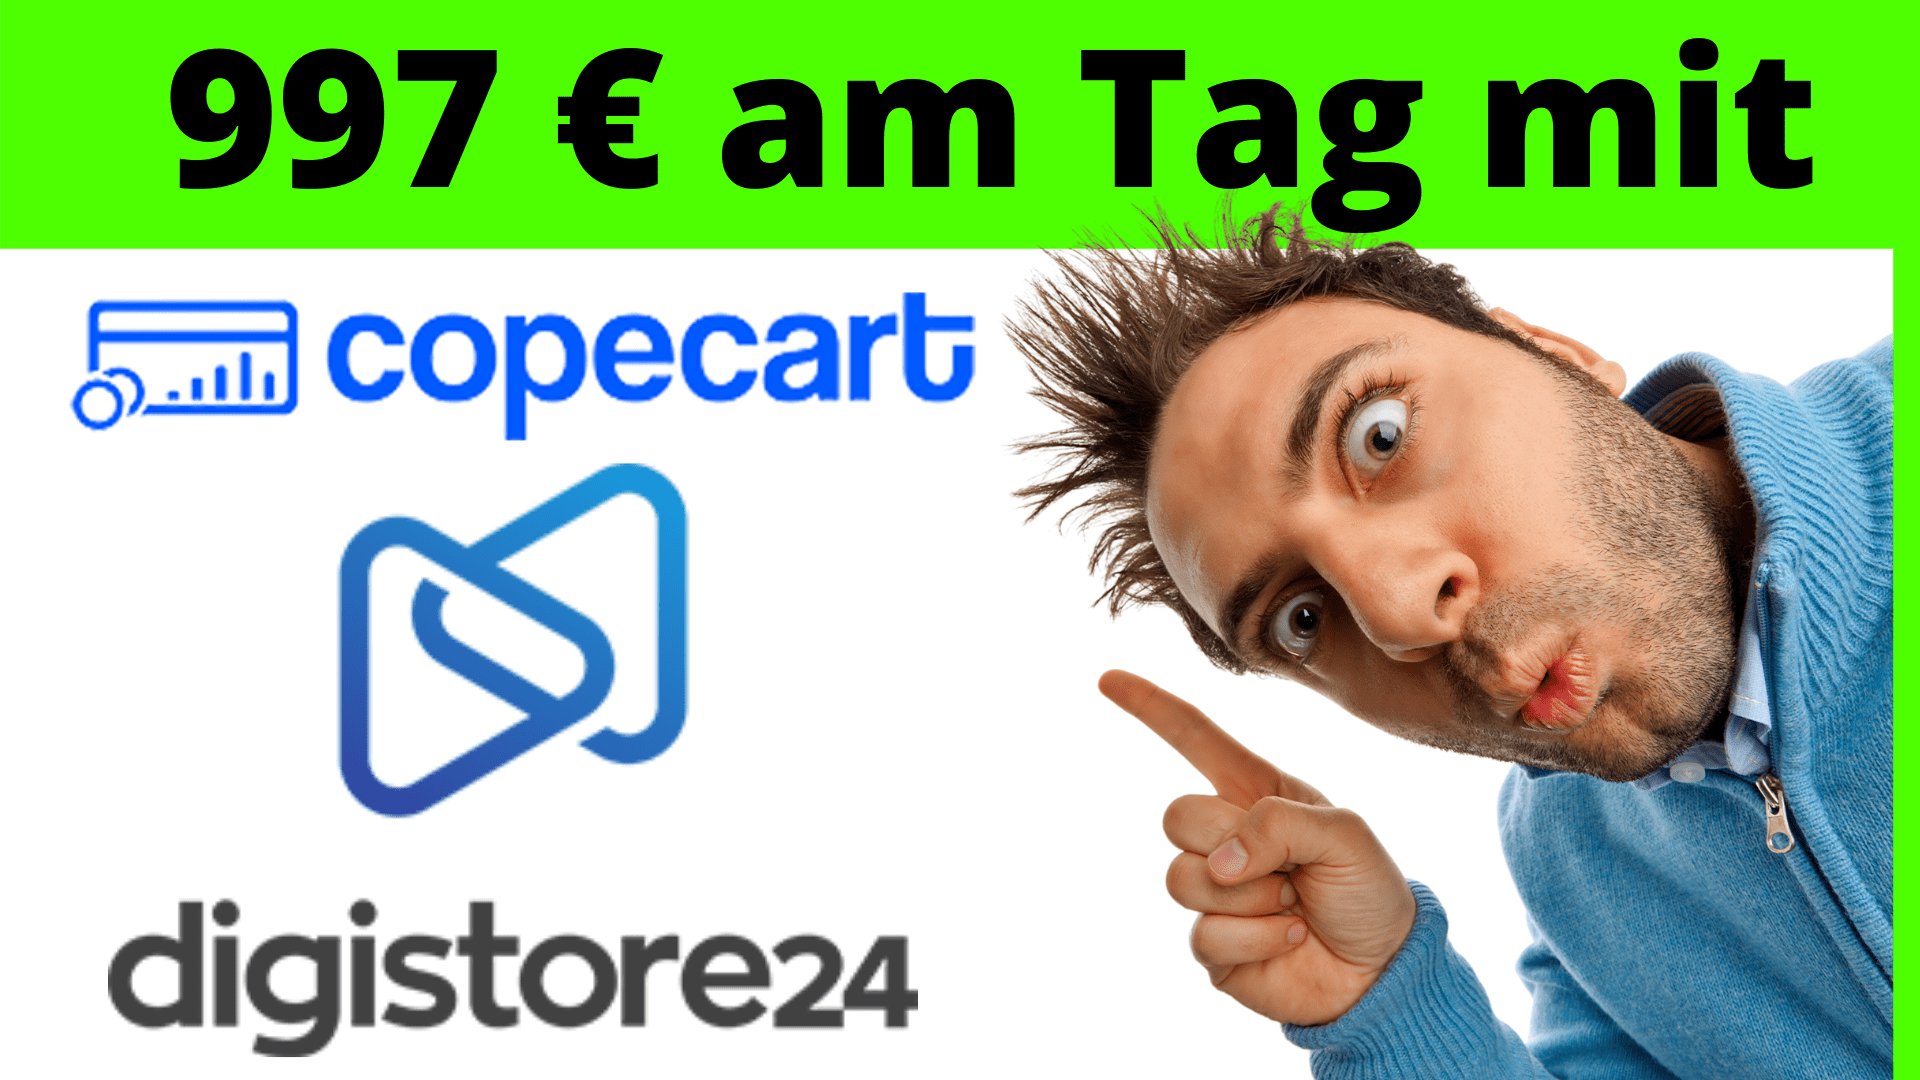 997 Euro am Tag mit Digistore24 und CopeCart verdienen